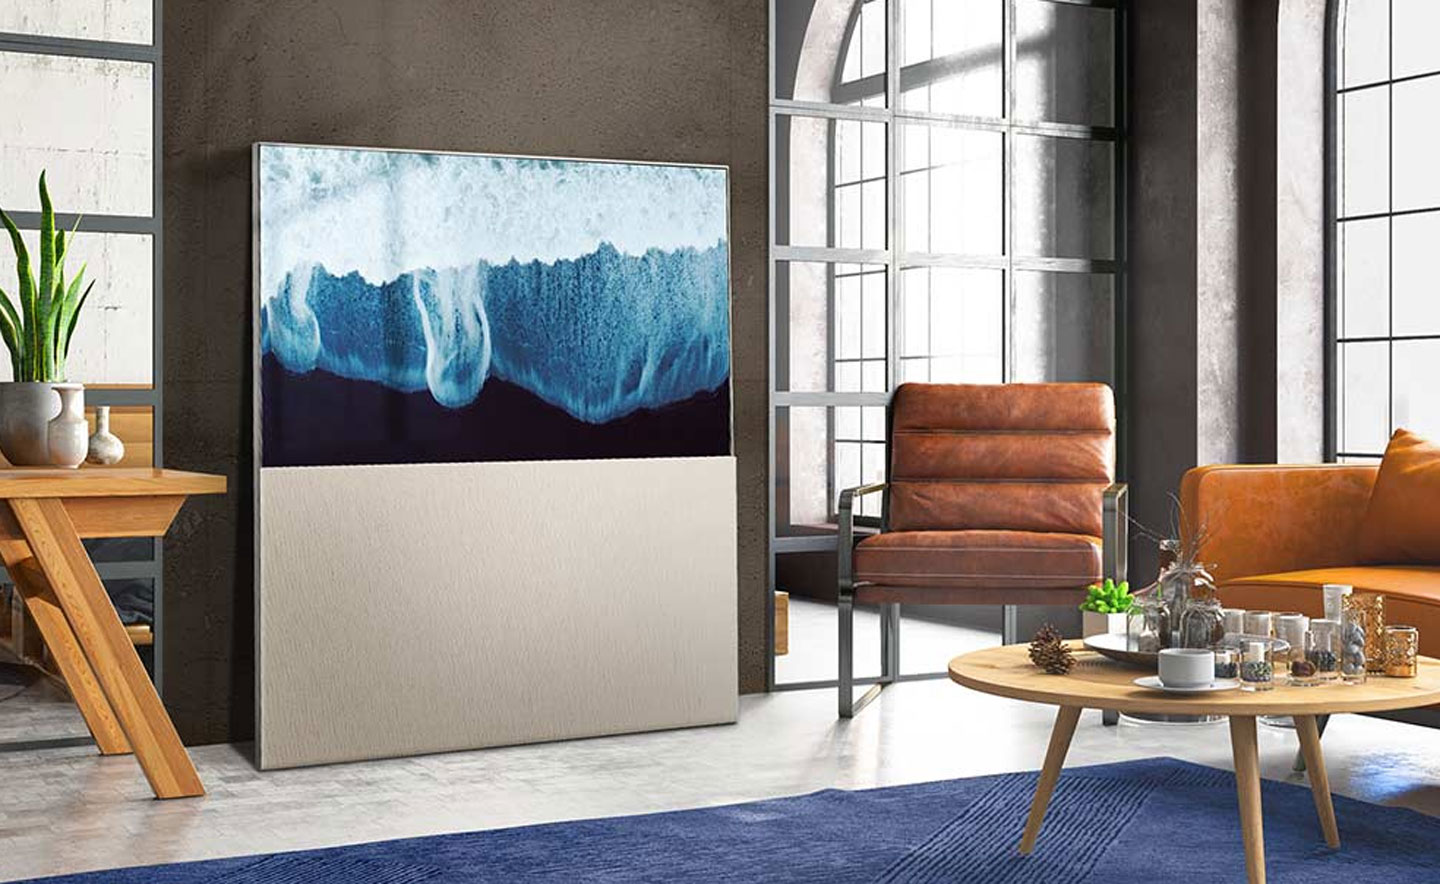 Object Easel 同時具備大尺寸電視的寬闊視野、獨特的滑動式外殼與一體成型式展架，成功將居家氛圍打造成如同藝廊一般。